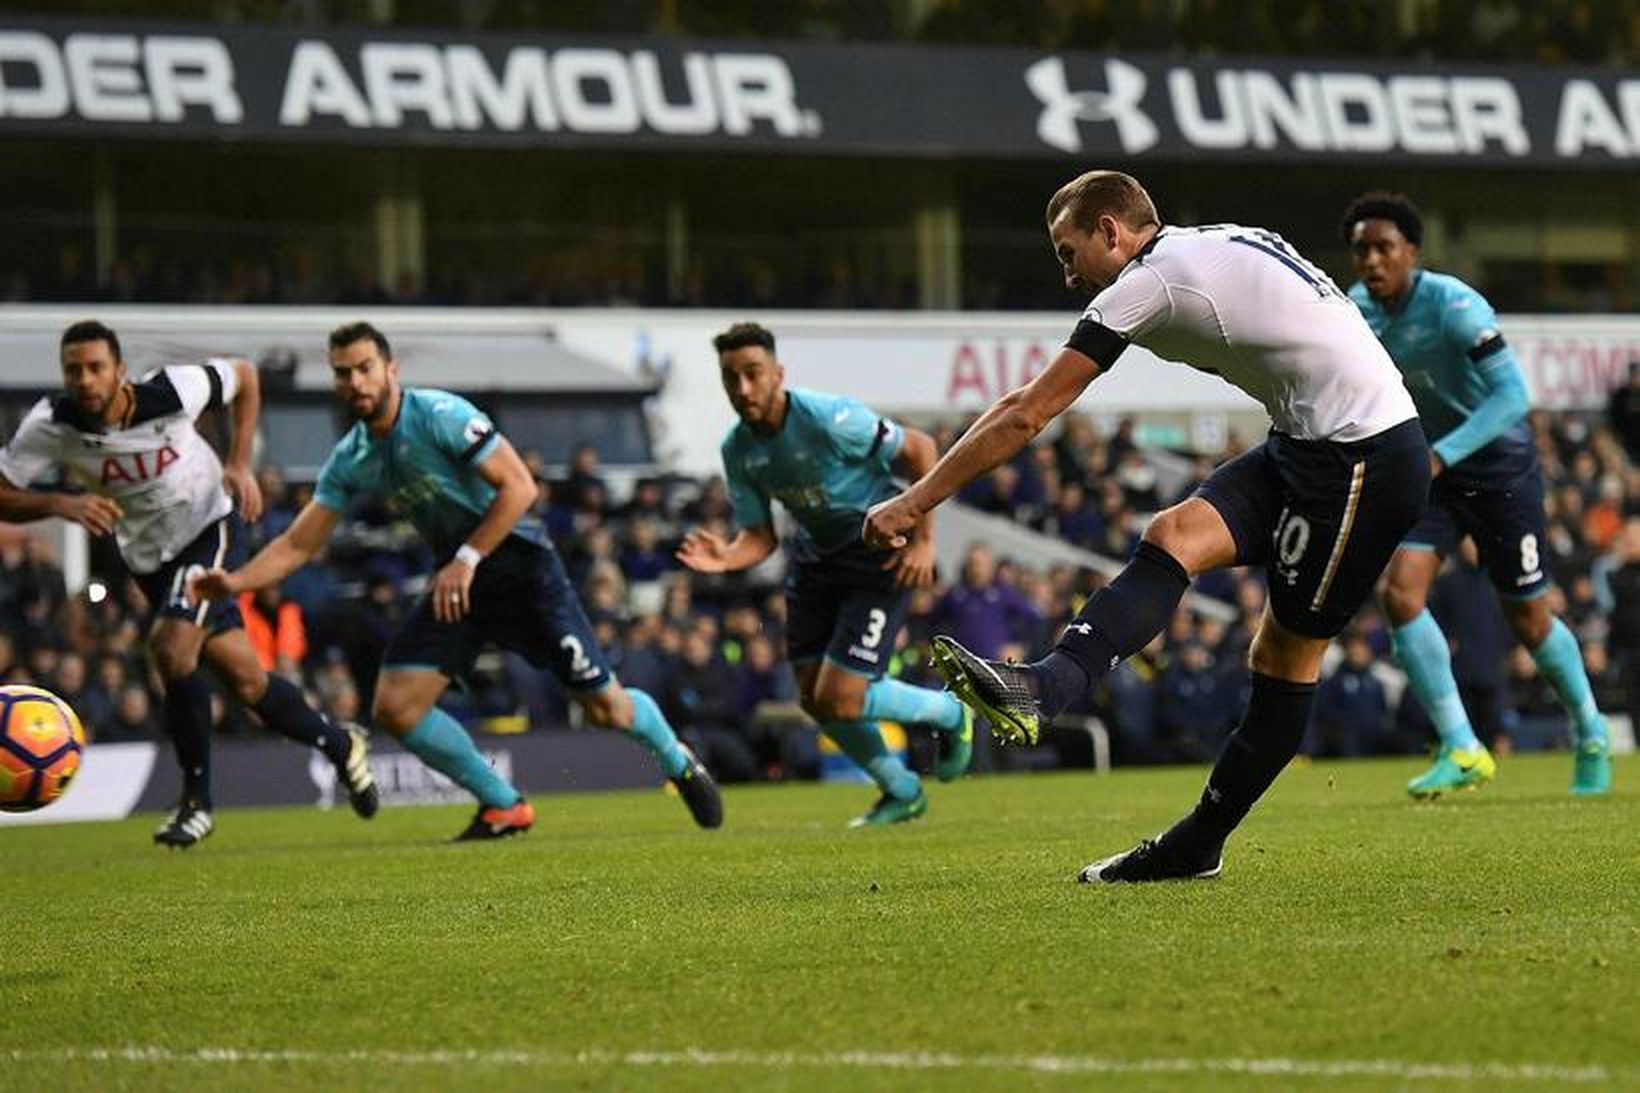 Harry Kane kemur Tottenham í 1:0 gegn Swansea með marki …